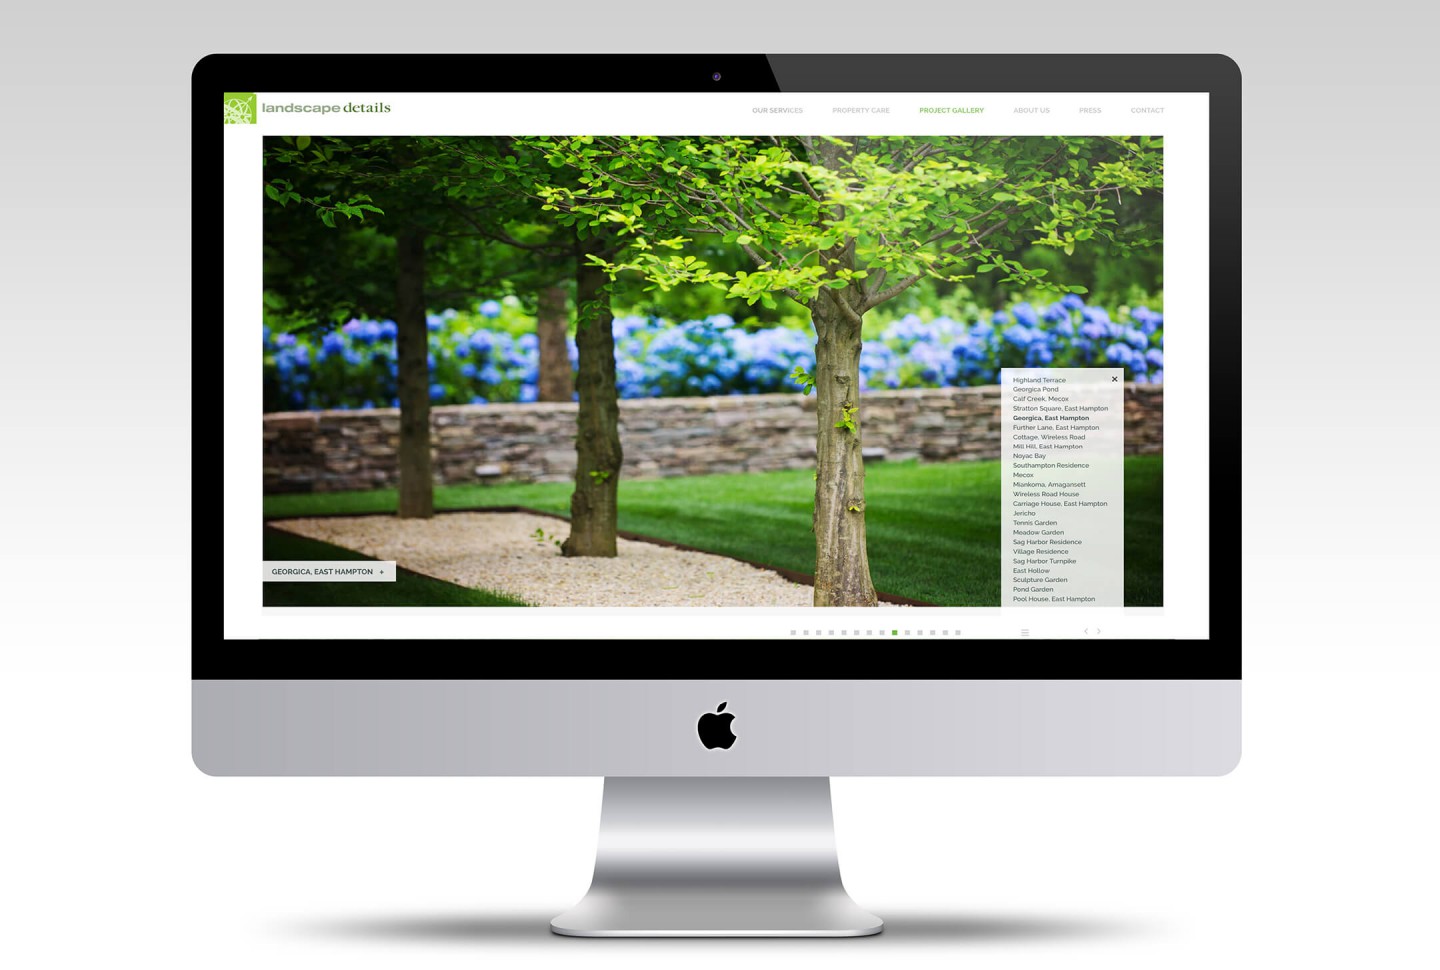 Landscape Details desktop web design view